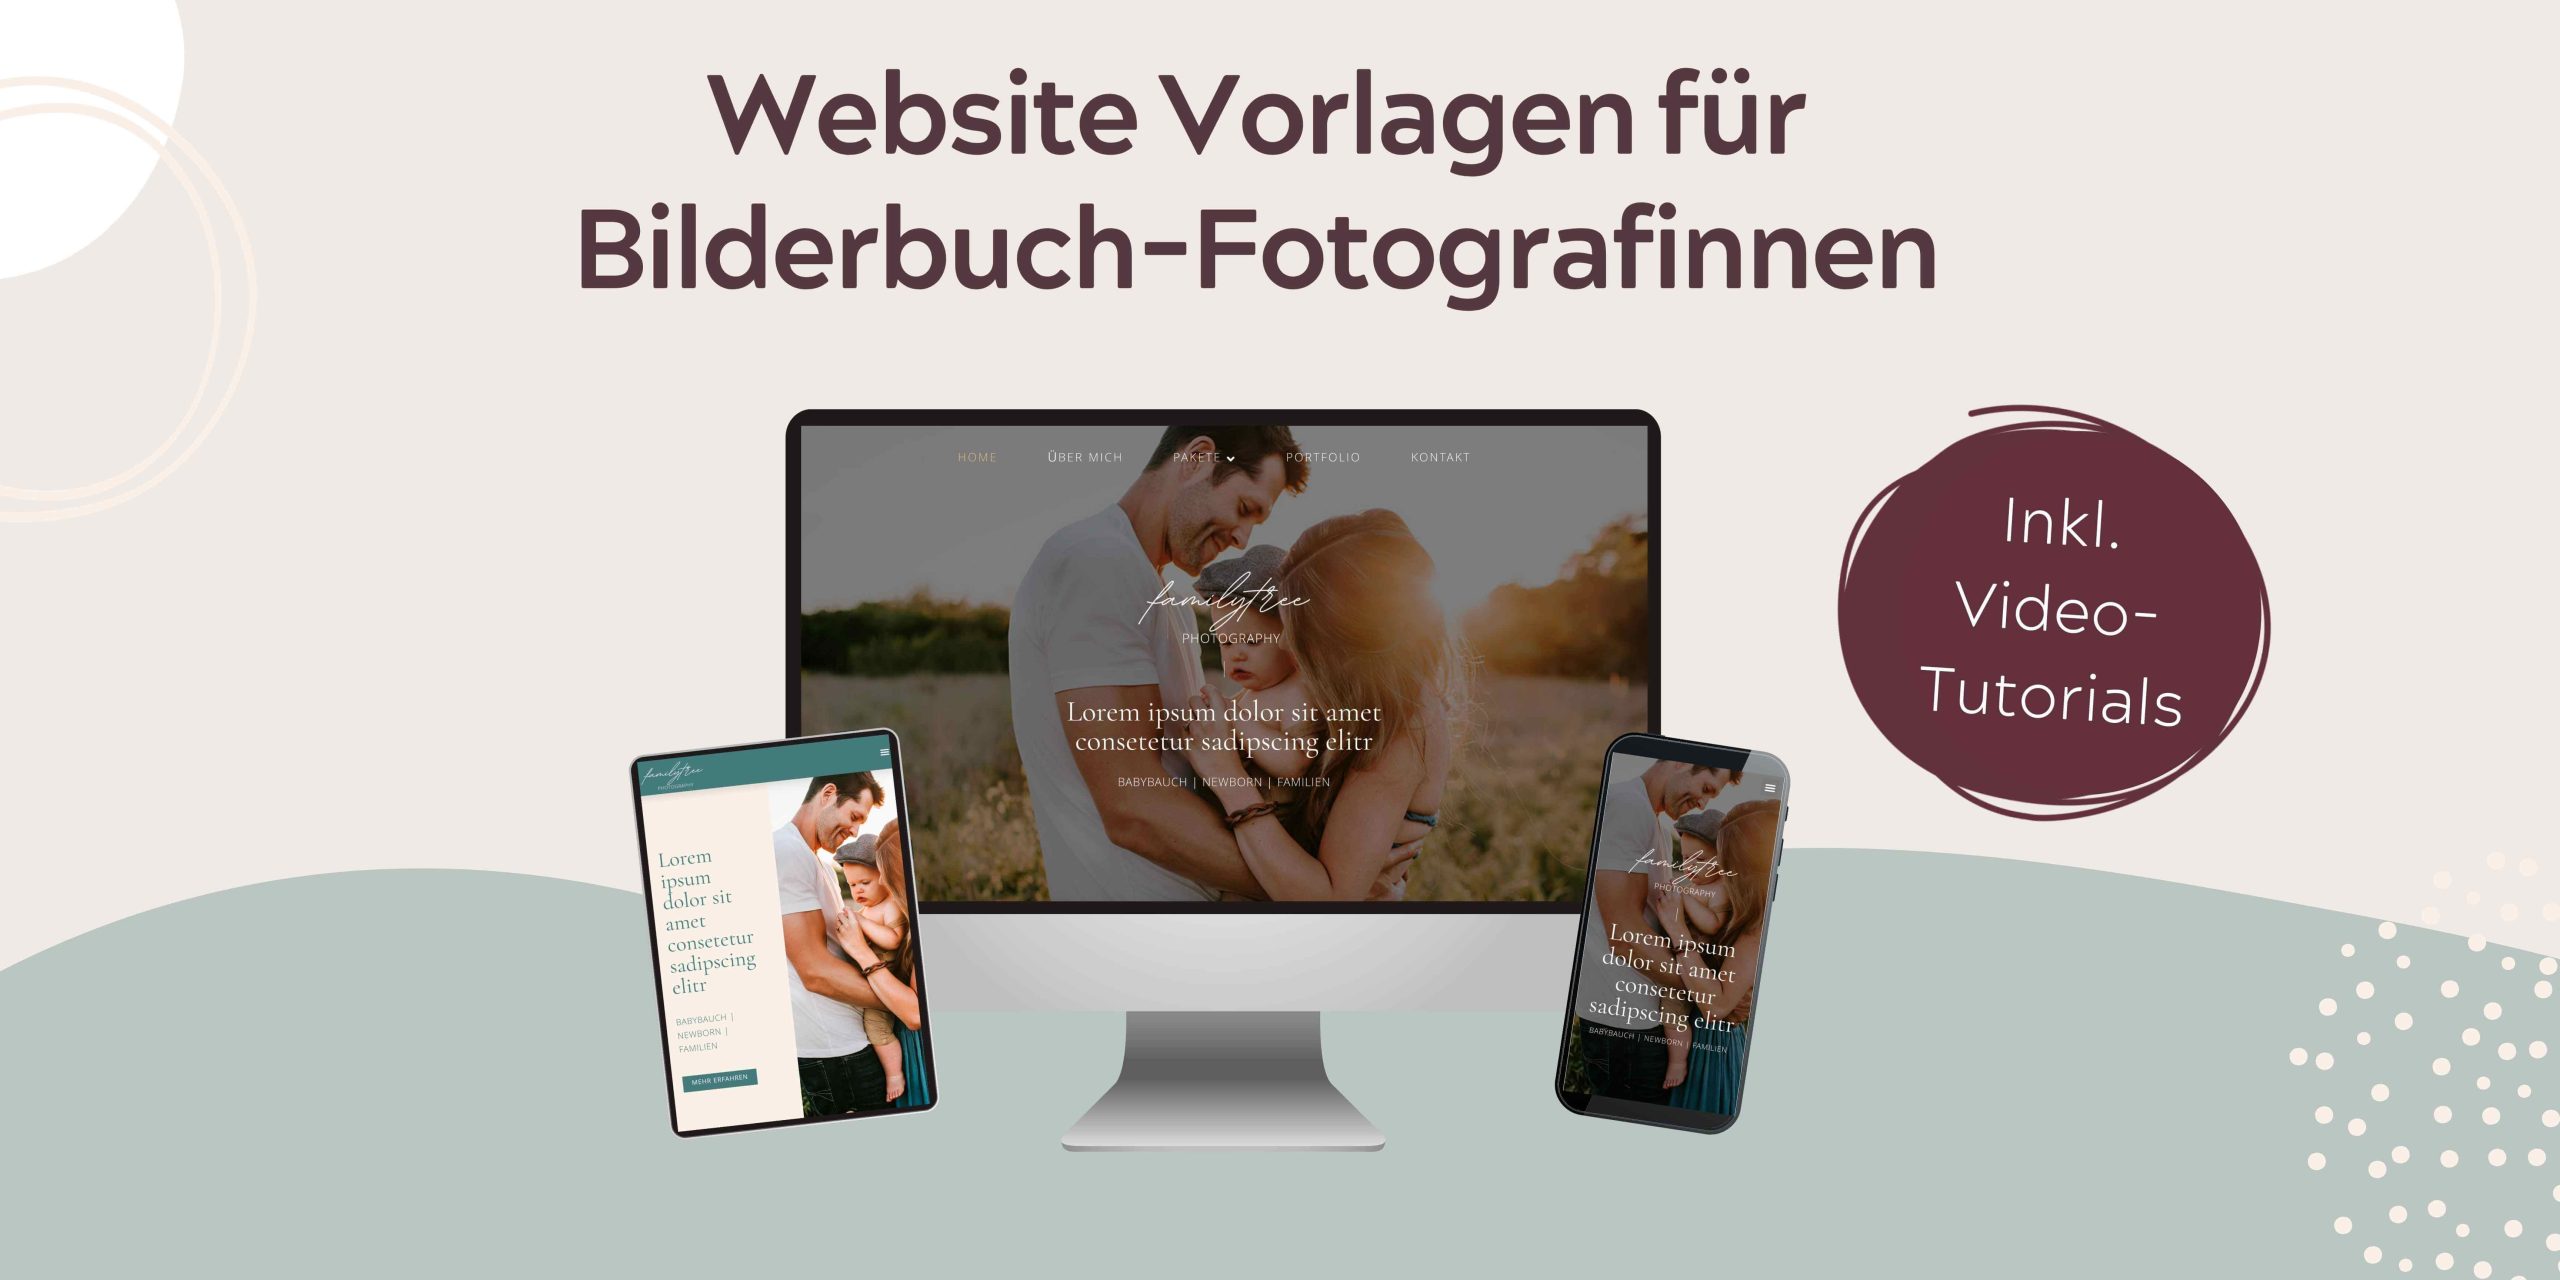 Website Vorlagen für Bilderbuch-Fotografinnen